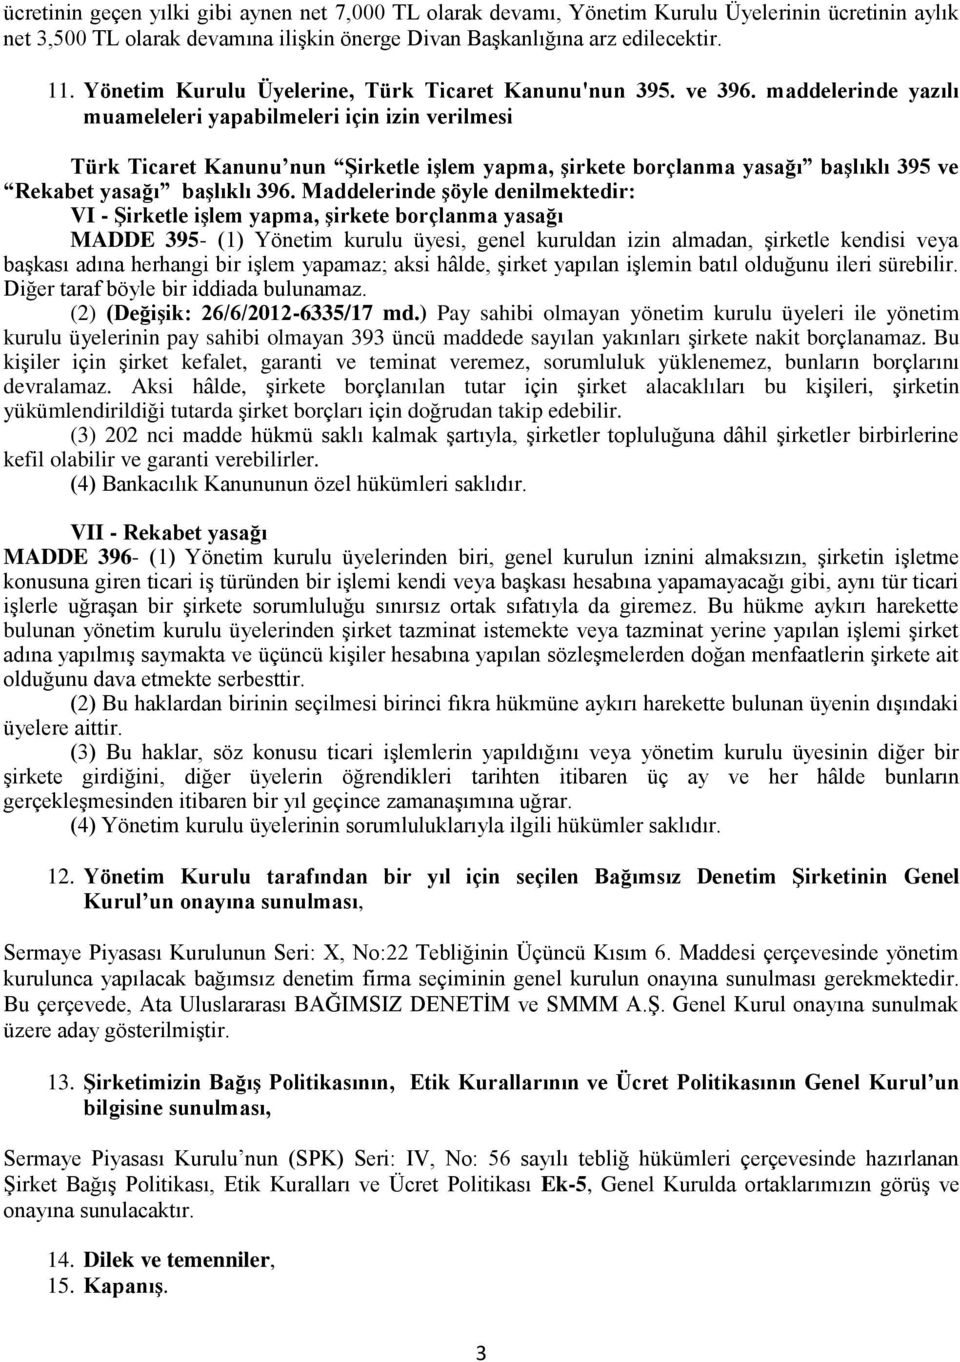 maddelerinde yazılı muameleleri yapabilmeleri için izin verilmesi Türk Ticaret Kanunu nun Şirketle işlem yapma, şirkete borçlanma yasağı başlıklı 395 ve Rekabet yasağı başlıklı 396.